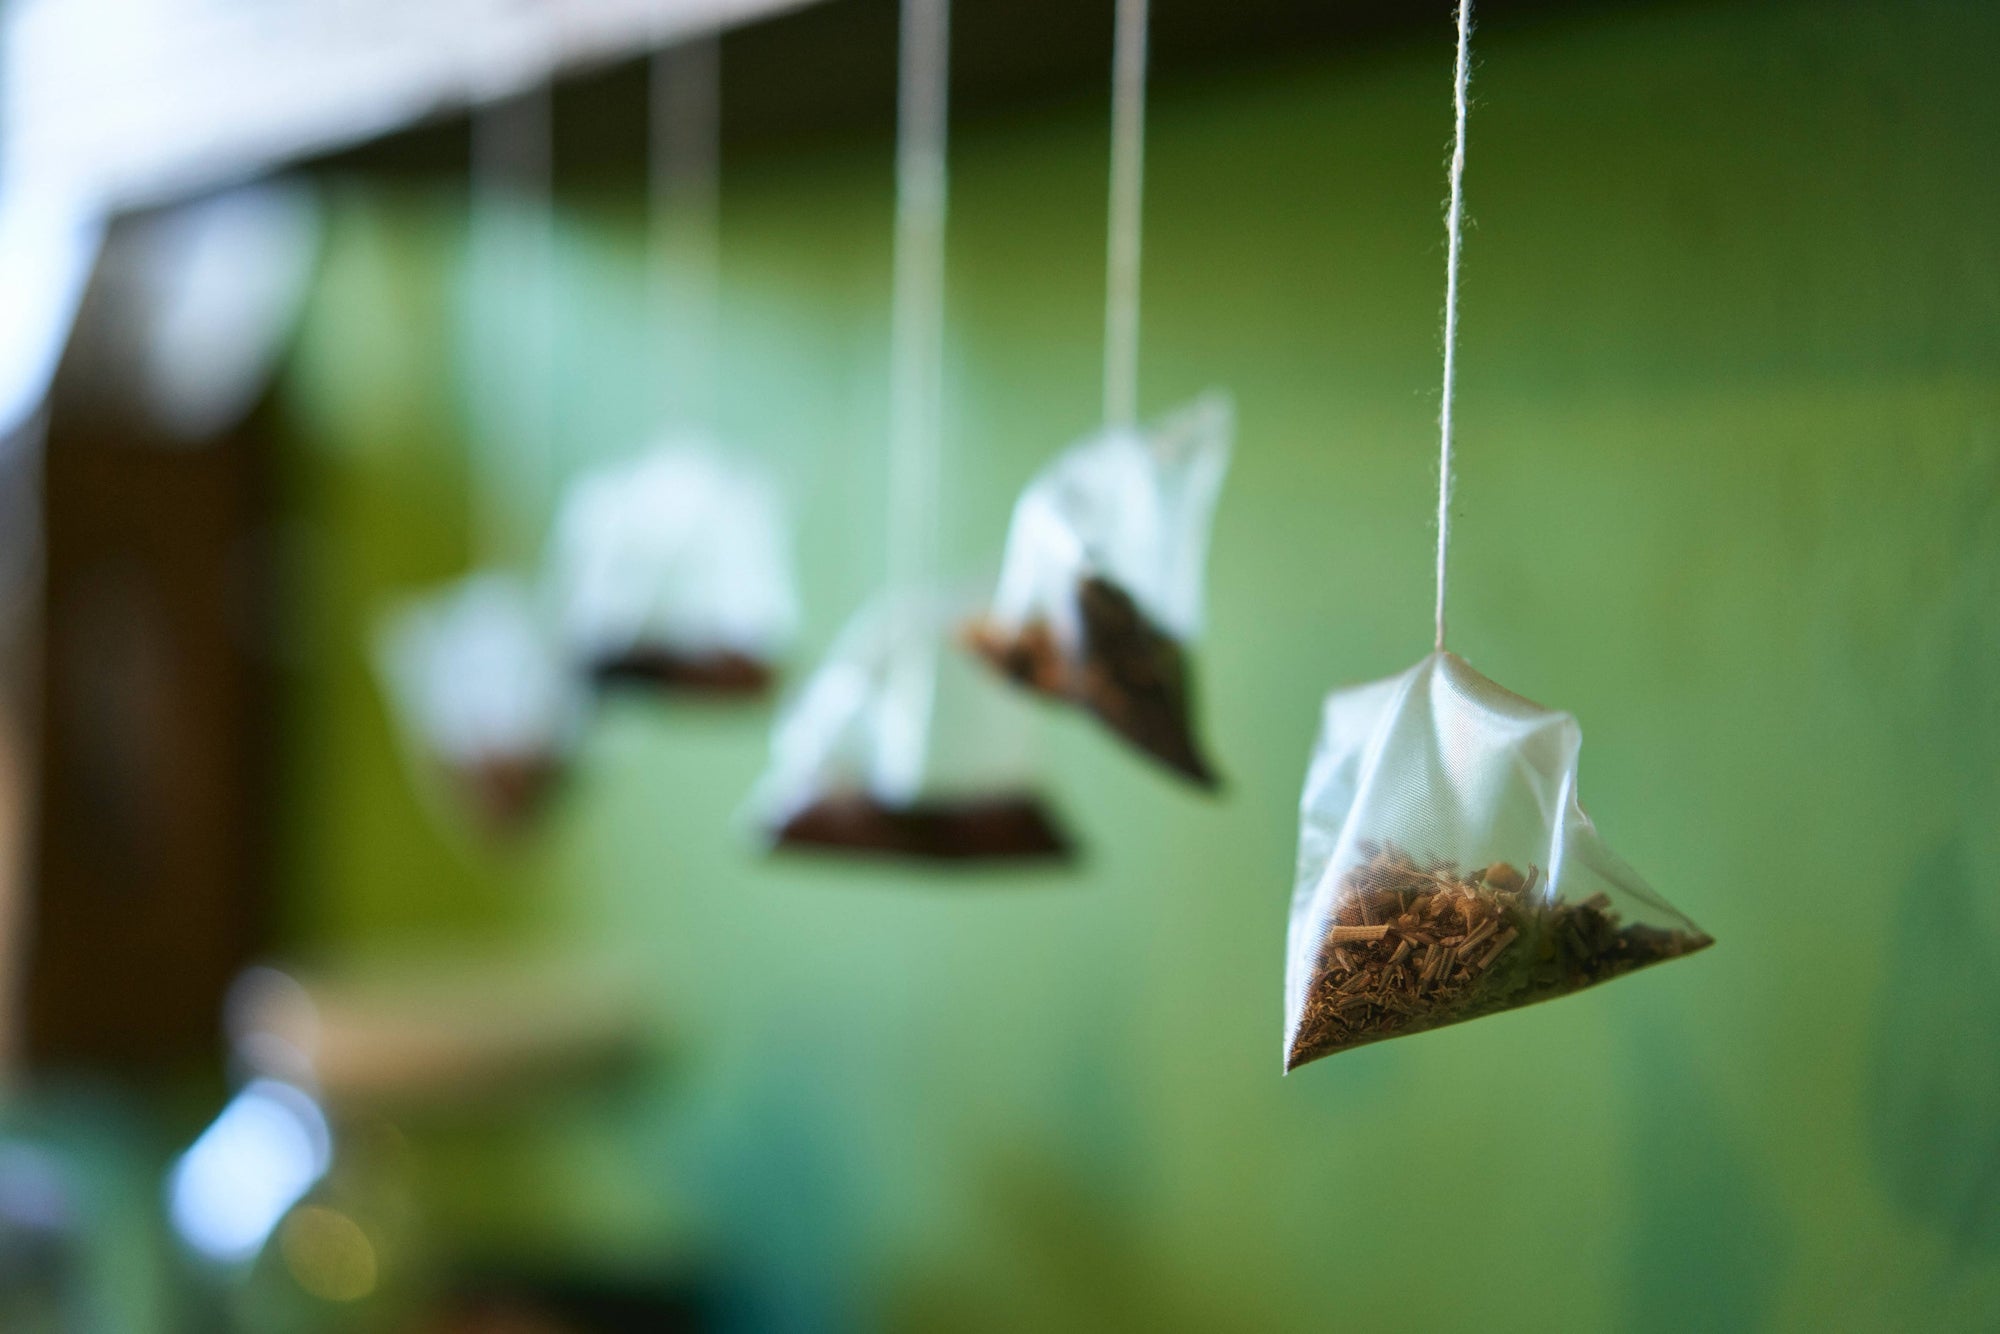 Drinking Loose Leaf Tea vs Tea Bags?